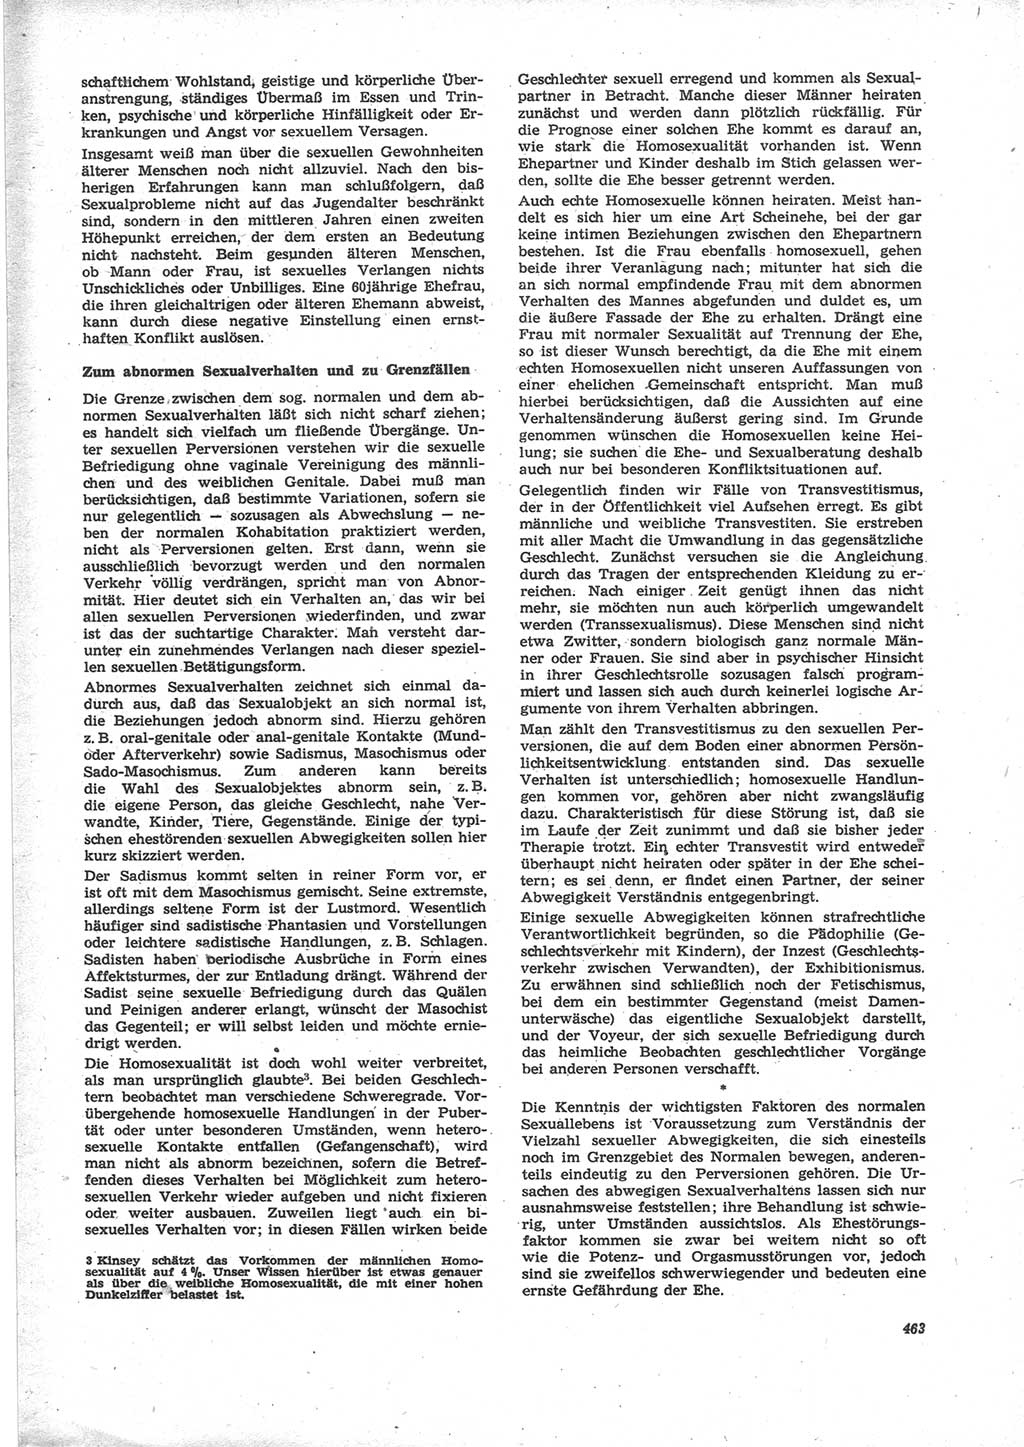 Neue Justiz (NJ), Zeitschrift für Recht und Rechtswissenschaft [Deutsche Demokratische Republik (DDR)], 24. Jahrgang 1970, Seite 463 (NJ DDR 1970, S. 463)